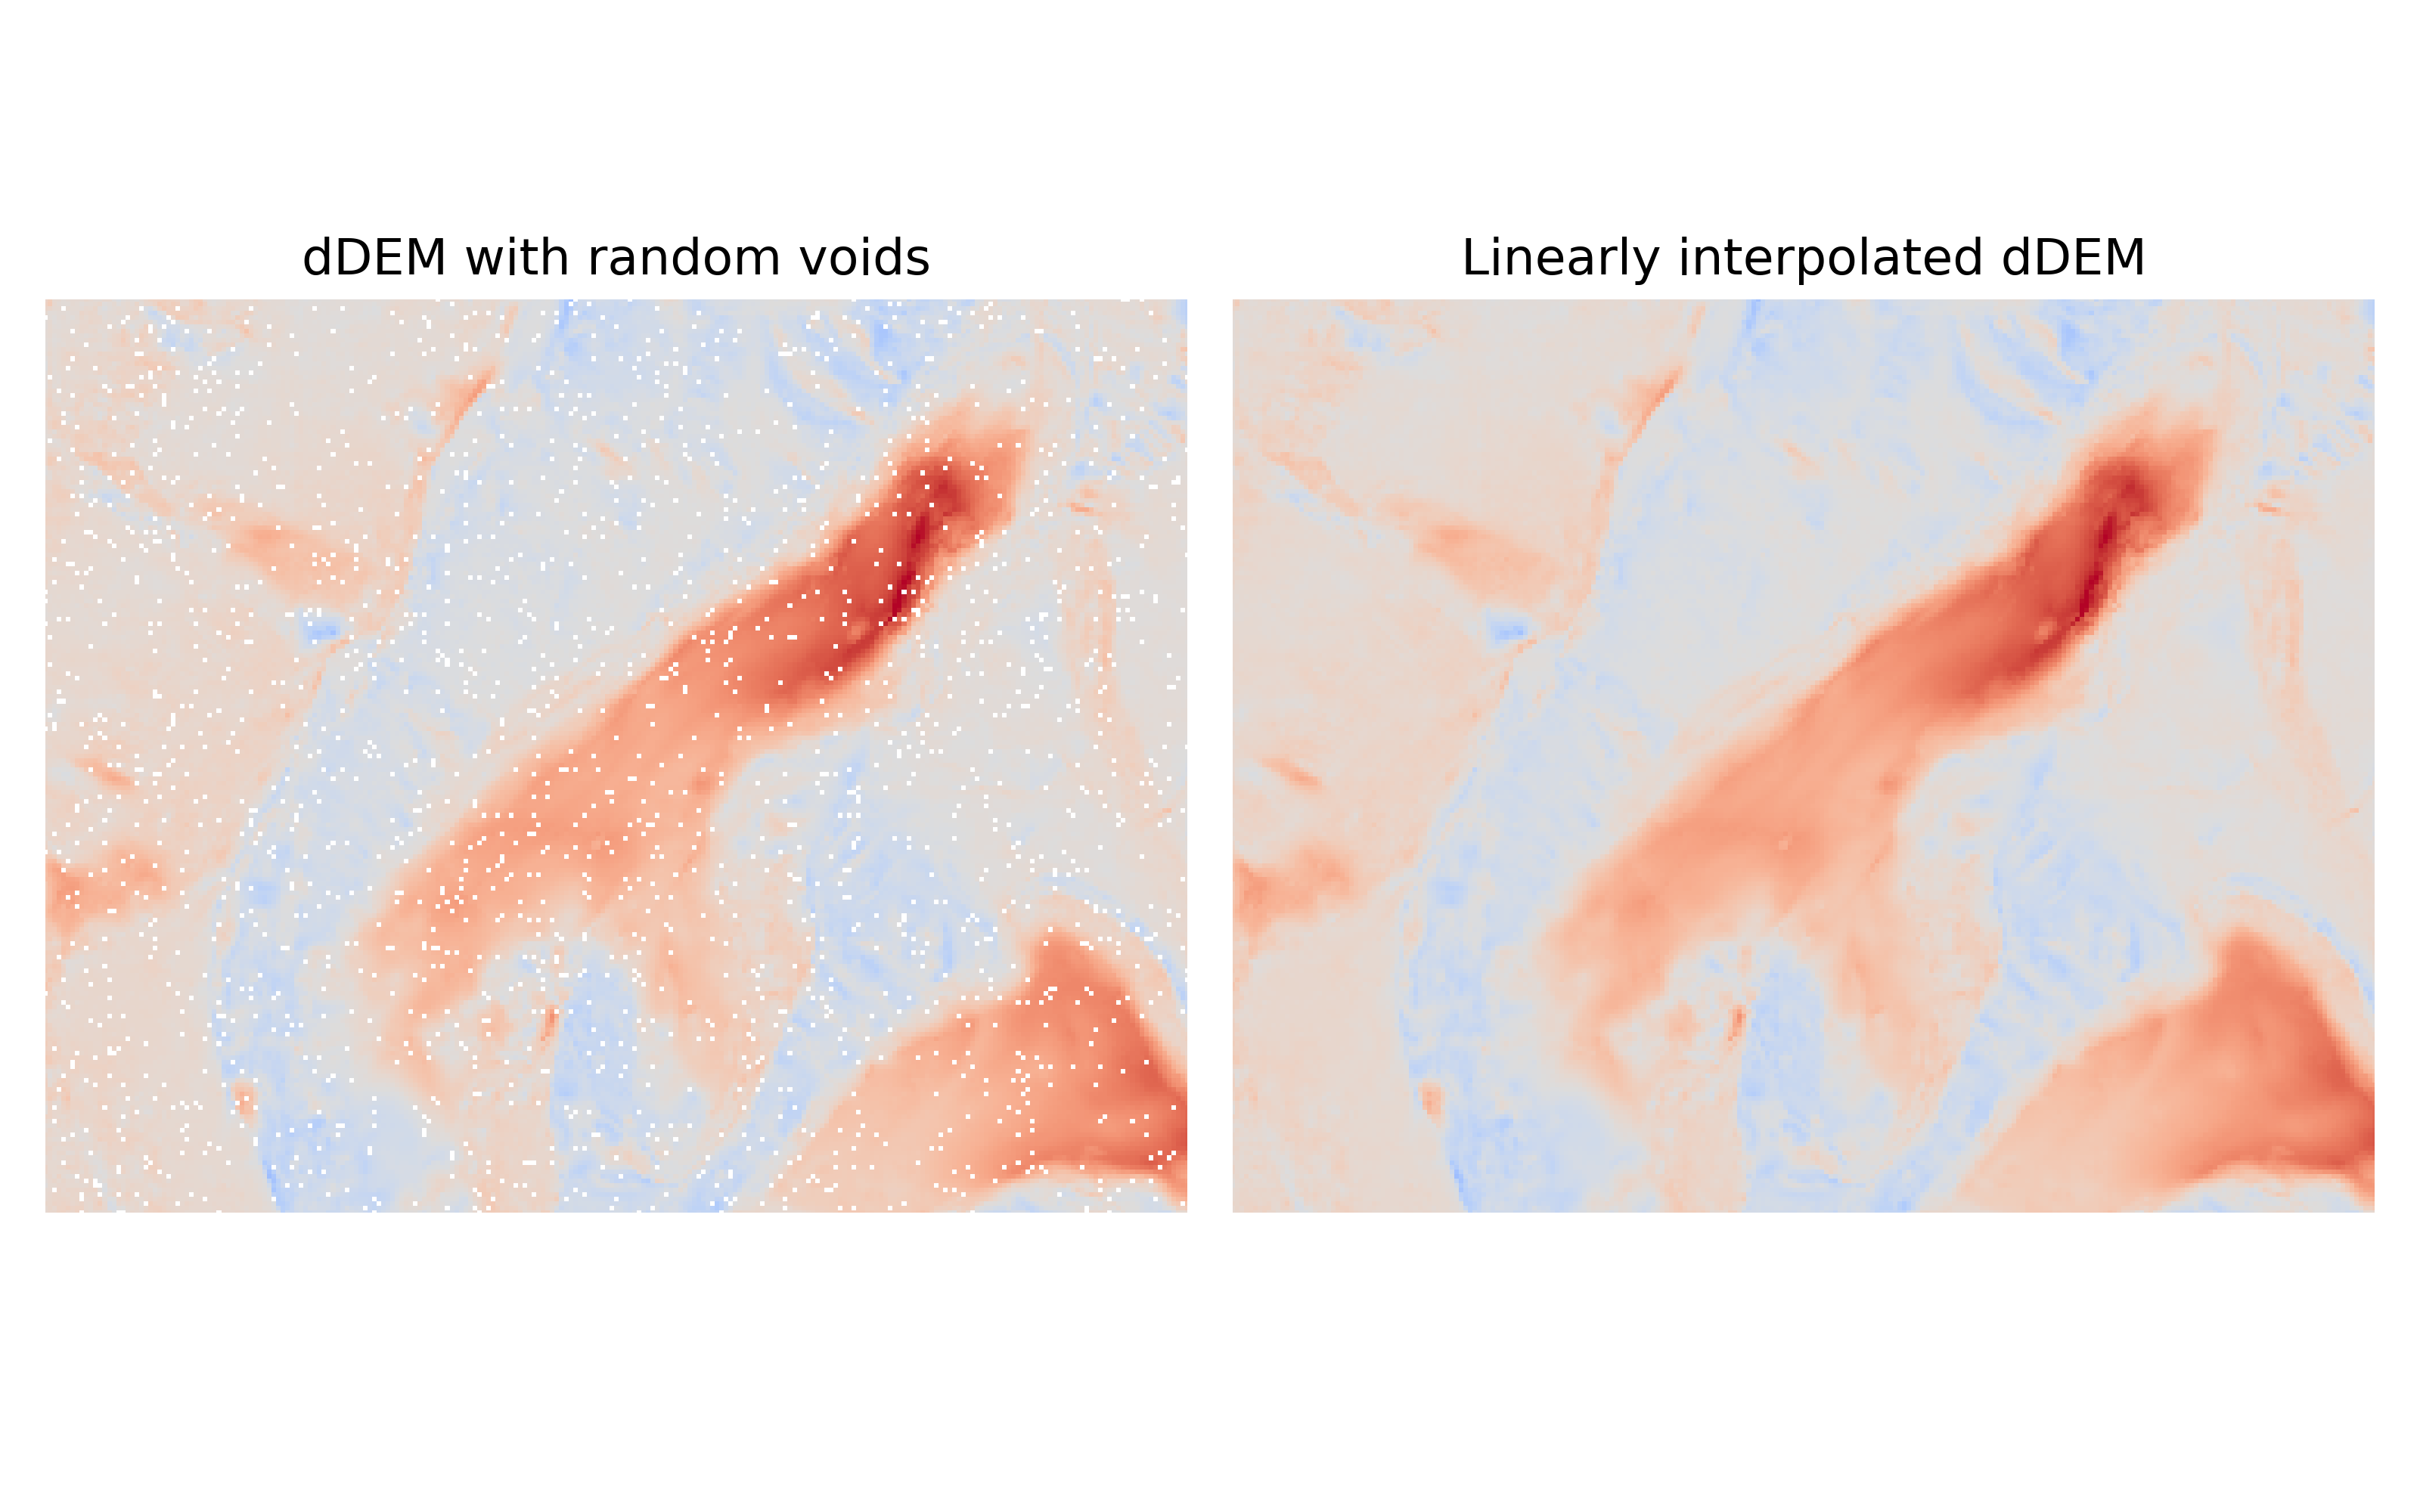 _images/comparison_plot_spatial_interpolation..png